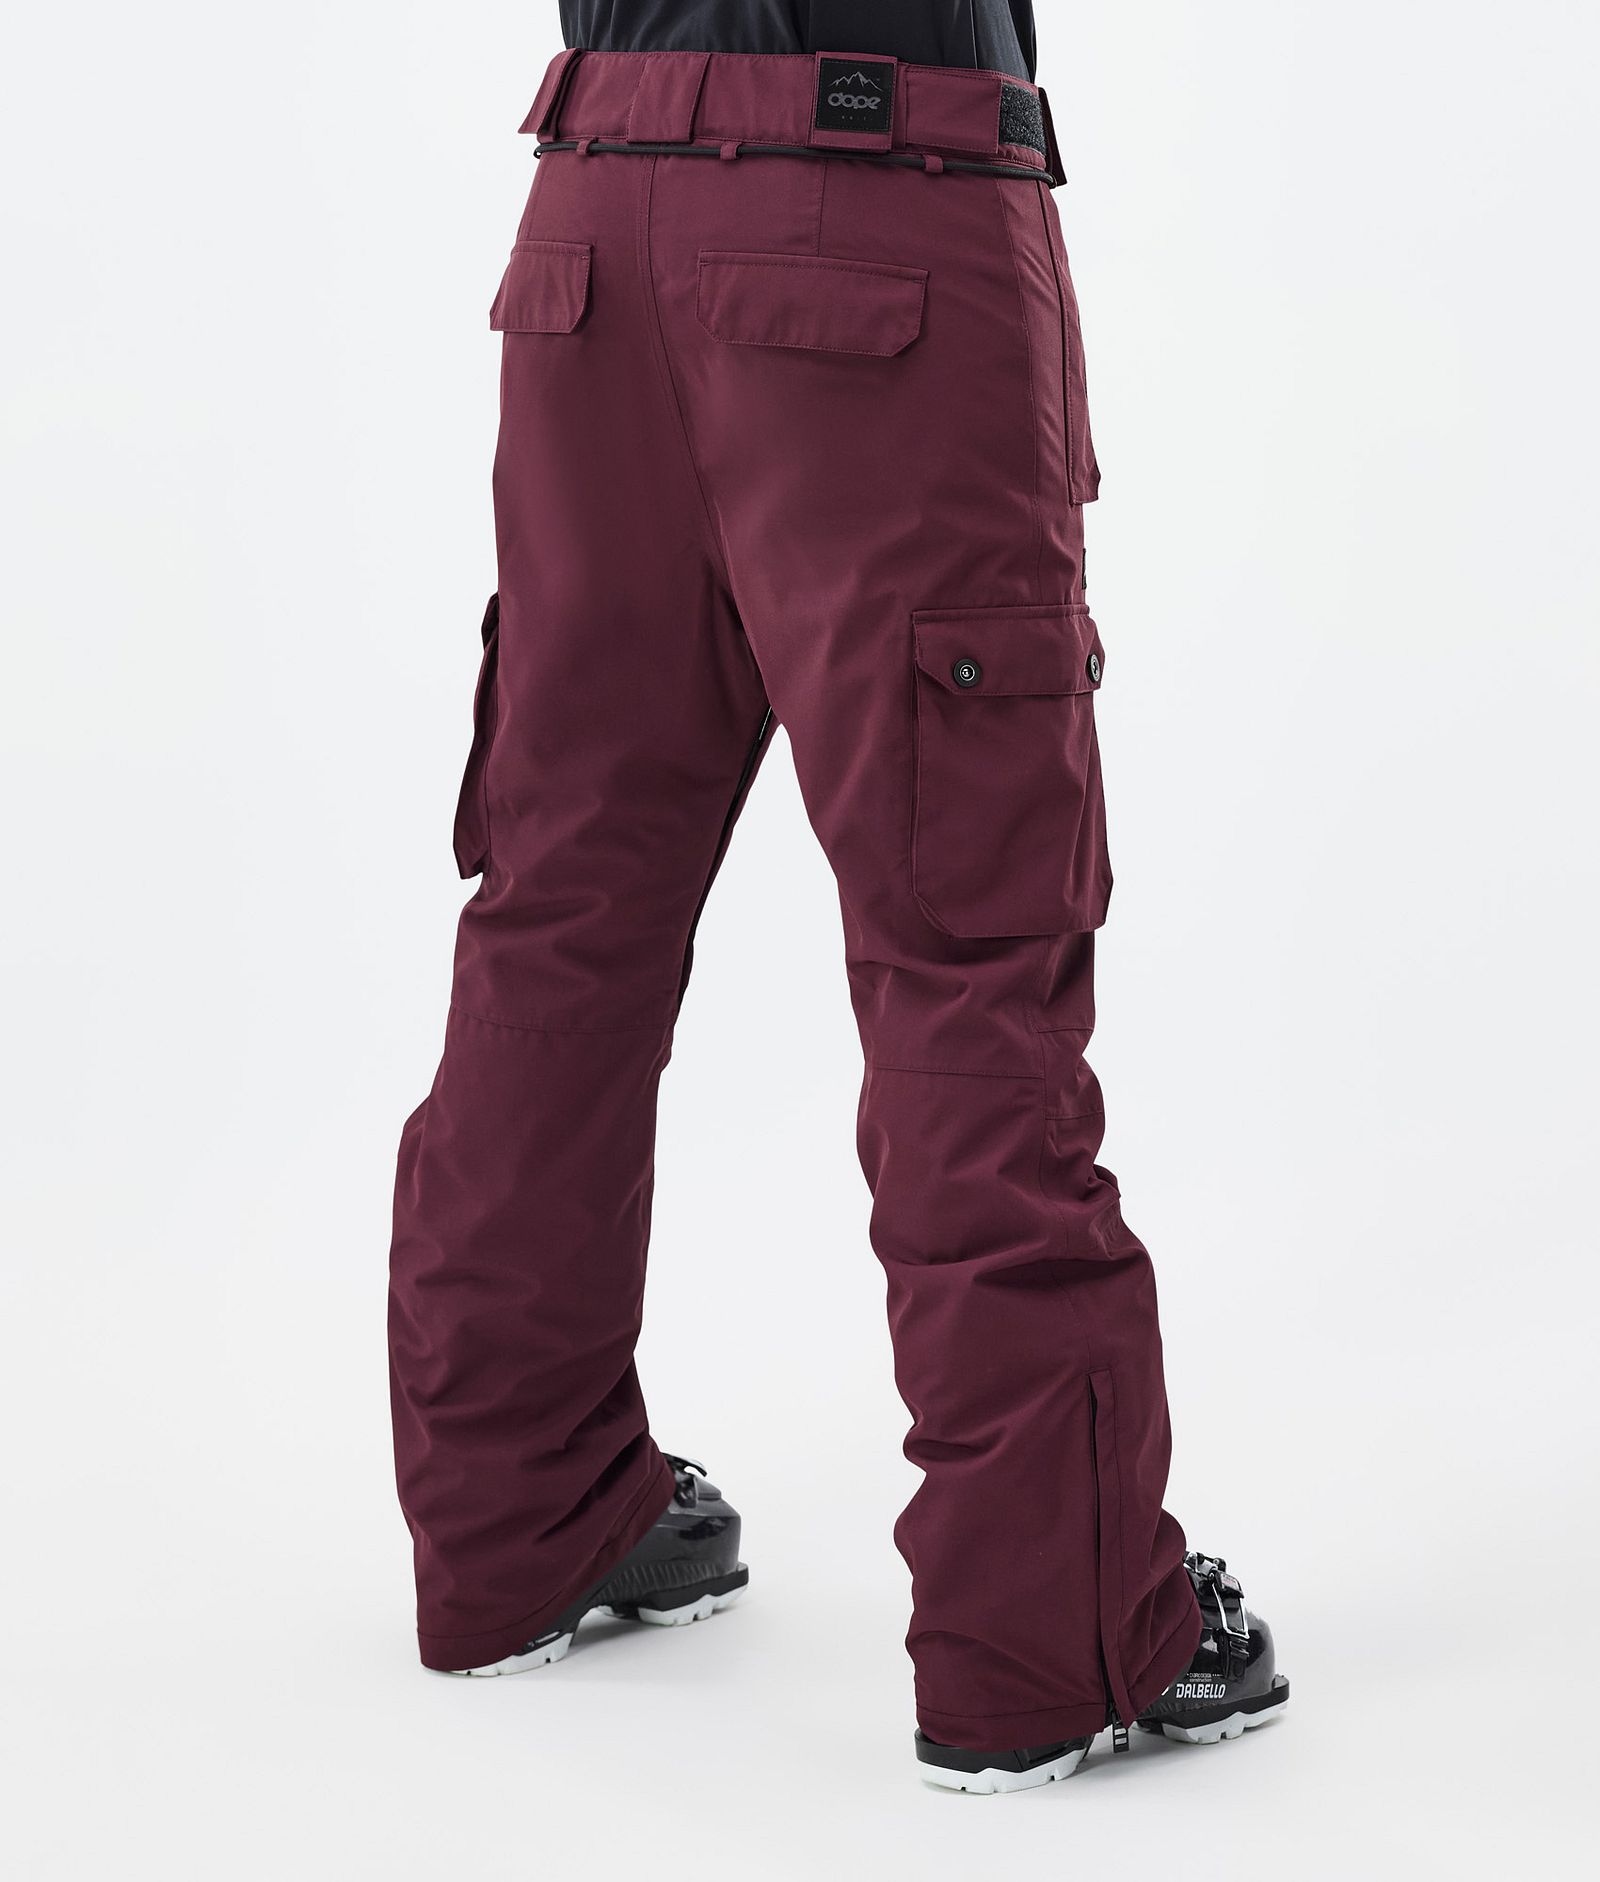 Iconic W Pantalon de Ski Femme Don Burgundy, Image 4 sur 7